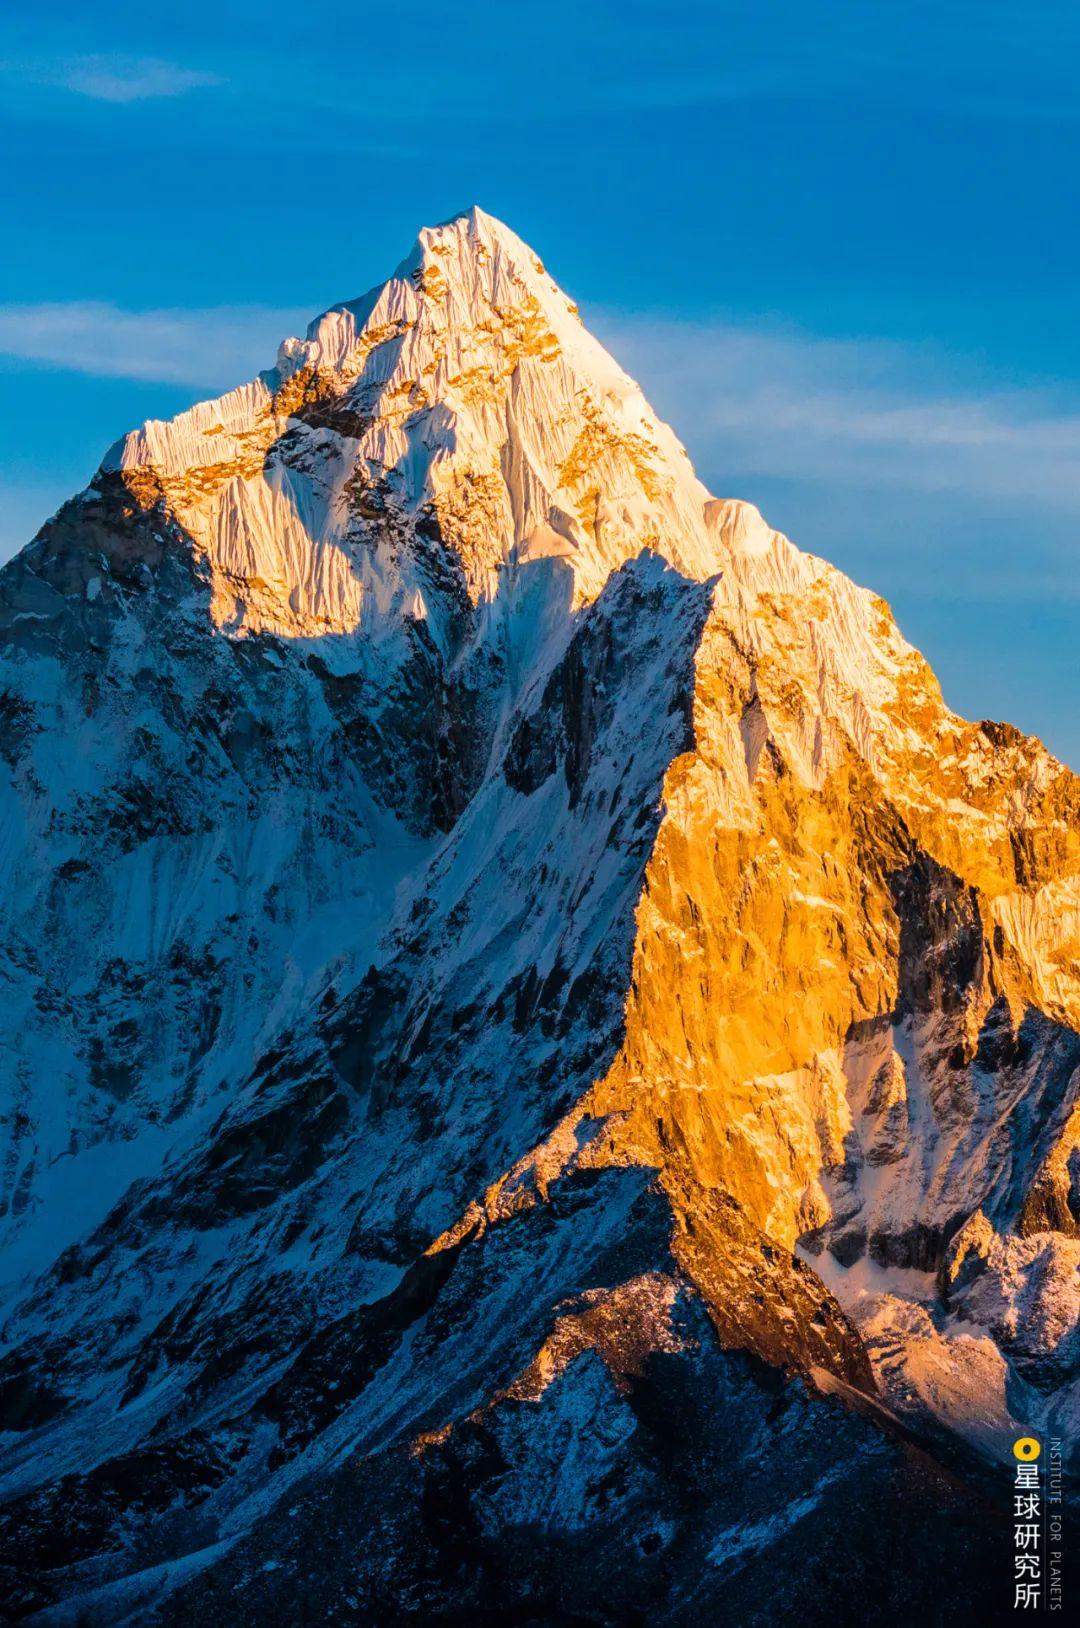 喜马拉雅山上最美丽的地方在哪里? 